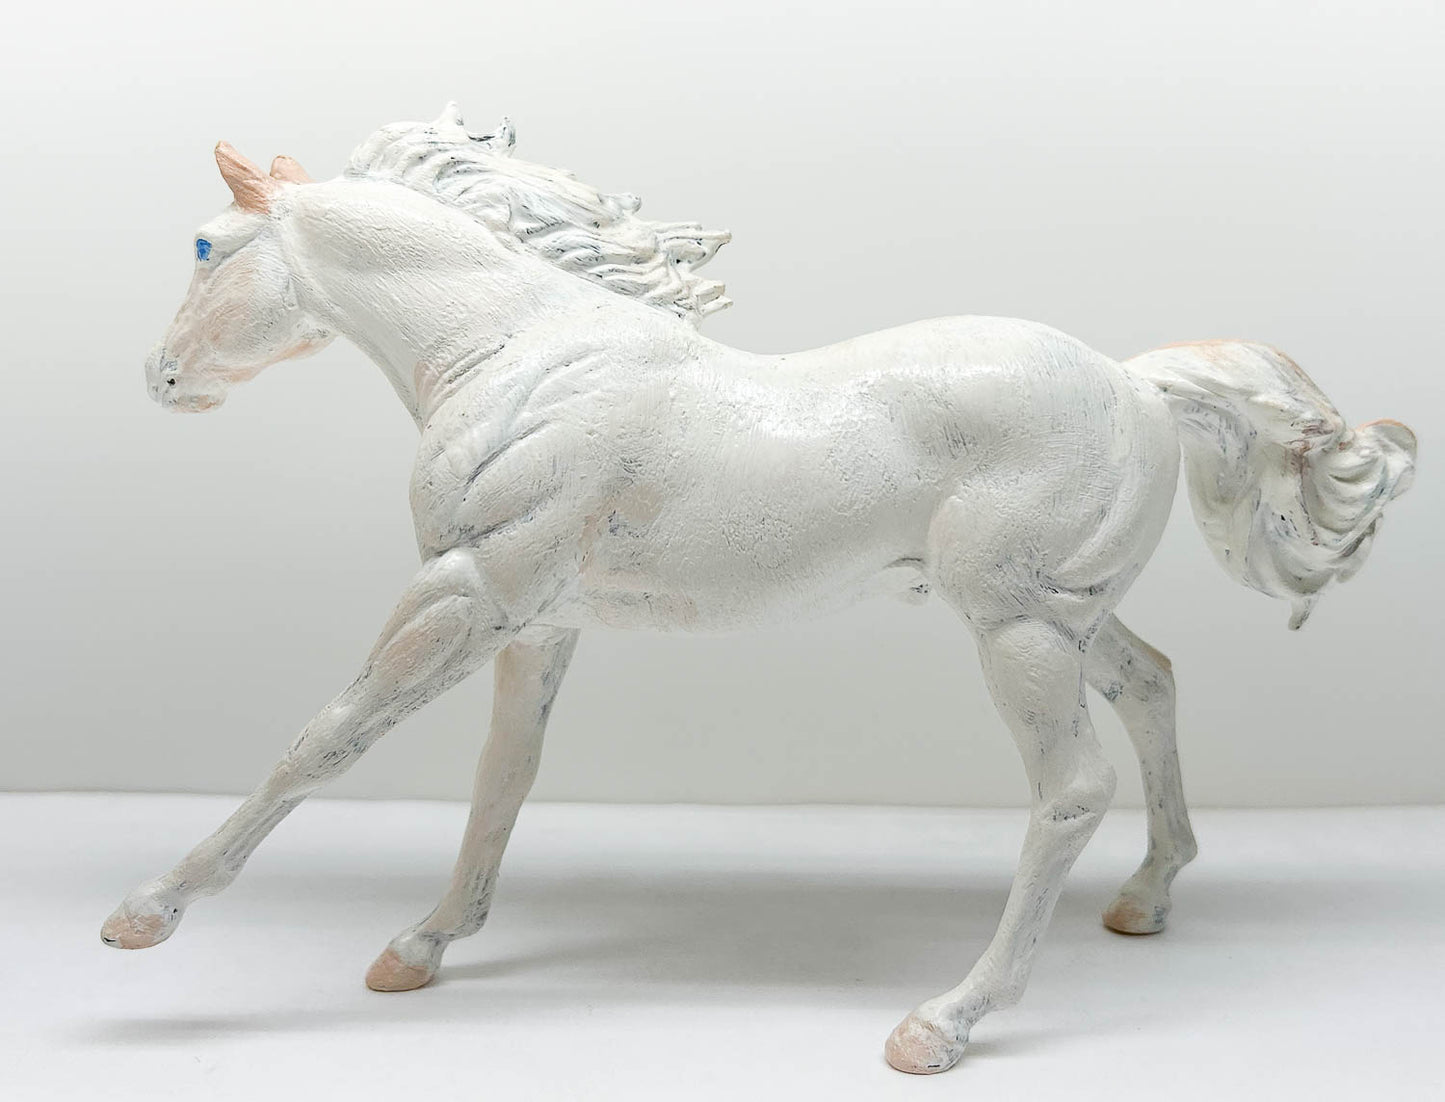 American Quarter Horse Stallion, White & Tan - Body Previously Customized